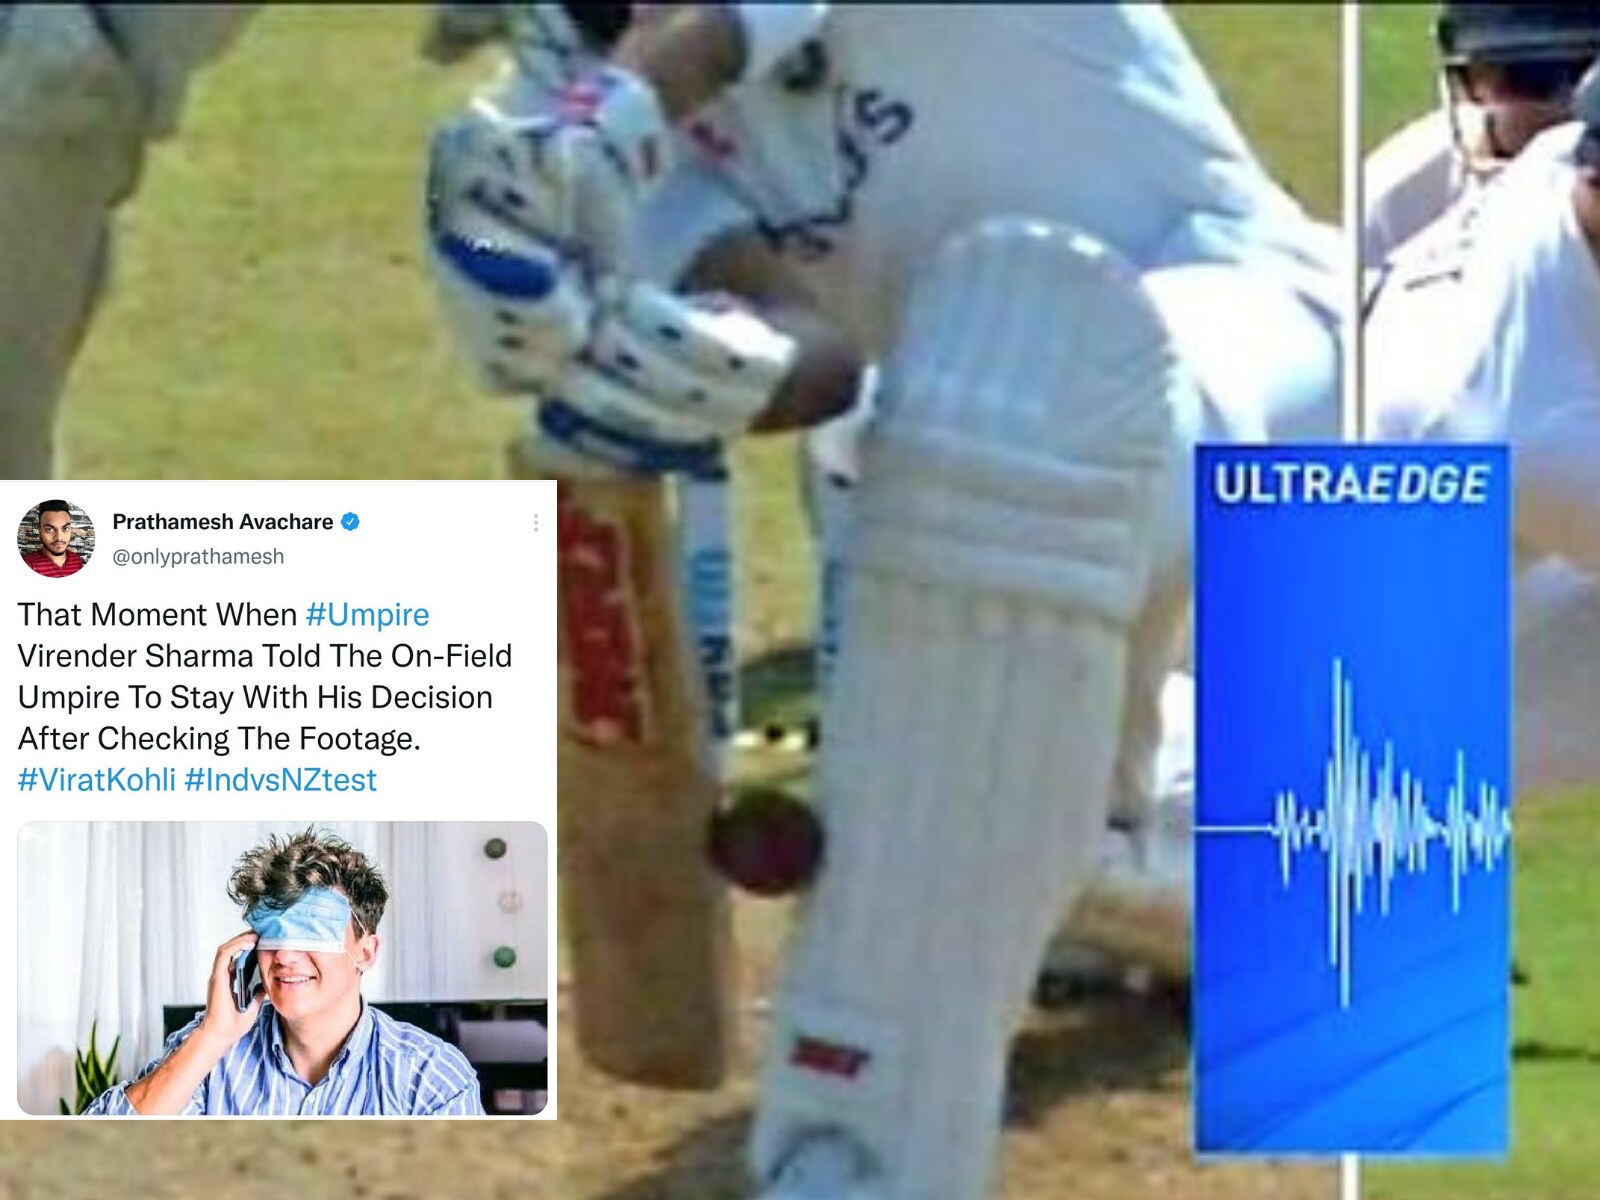 Virat Kohli's shell-shocked expression during Australia's innings sparks  meme fest on Twitter